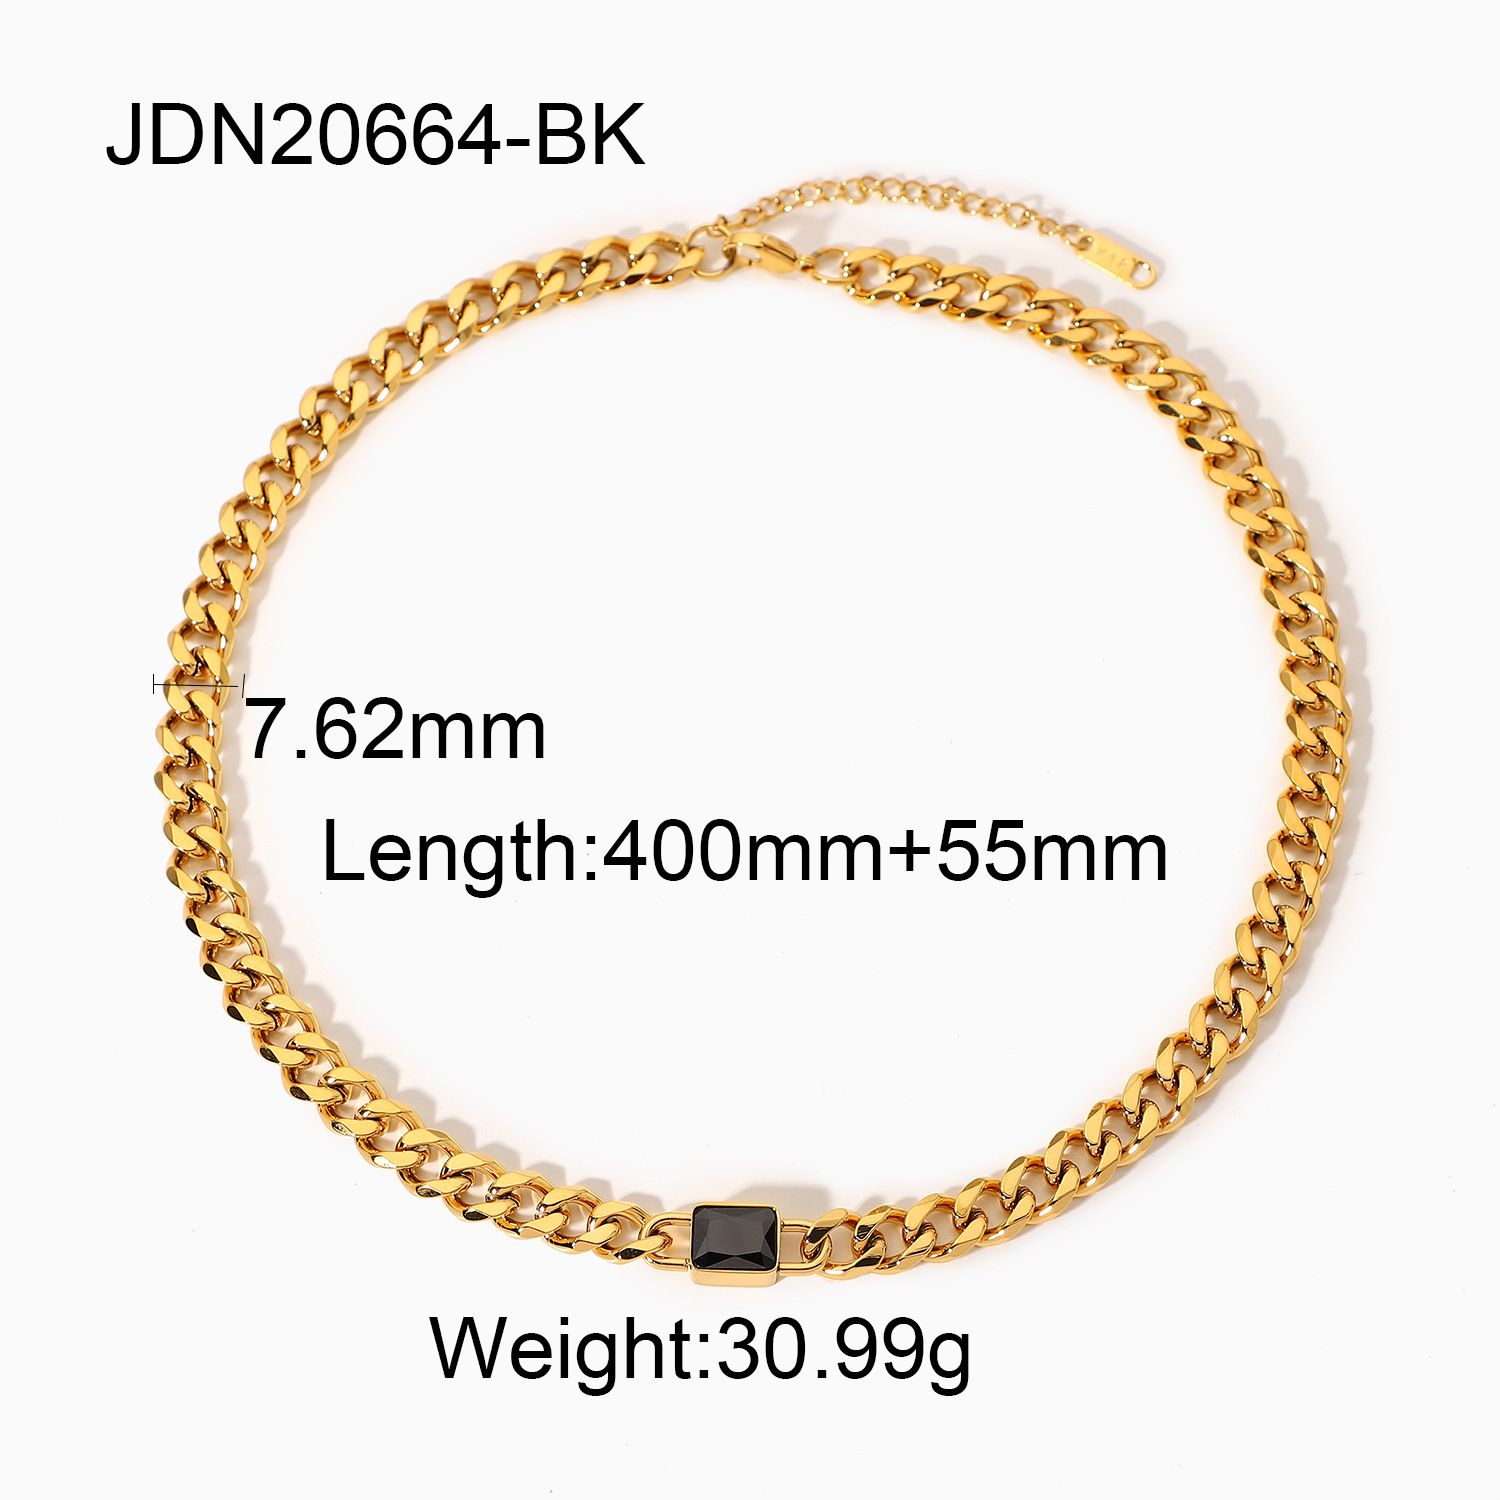 JDN20664-BK